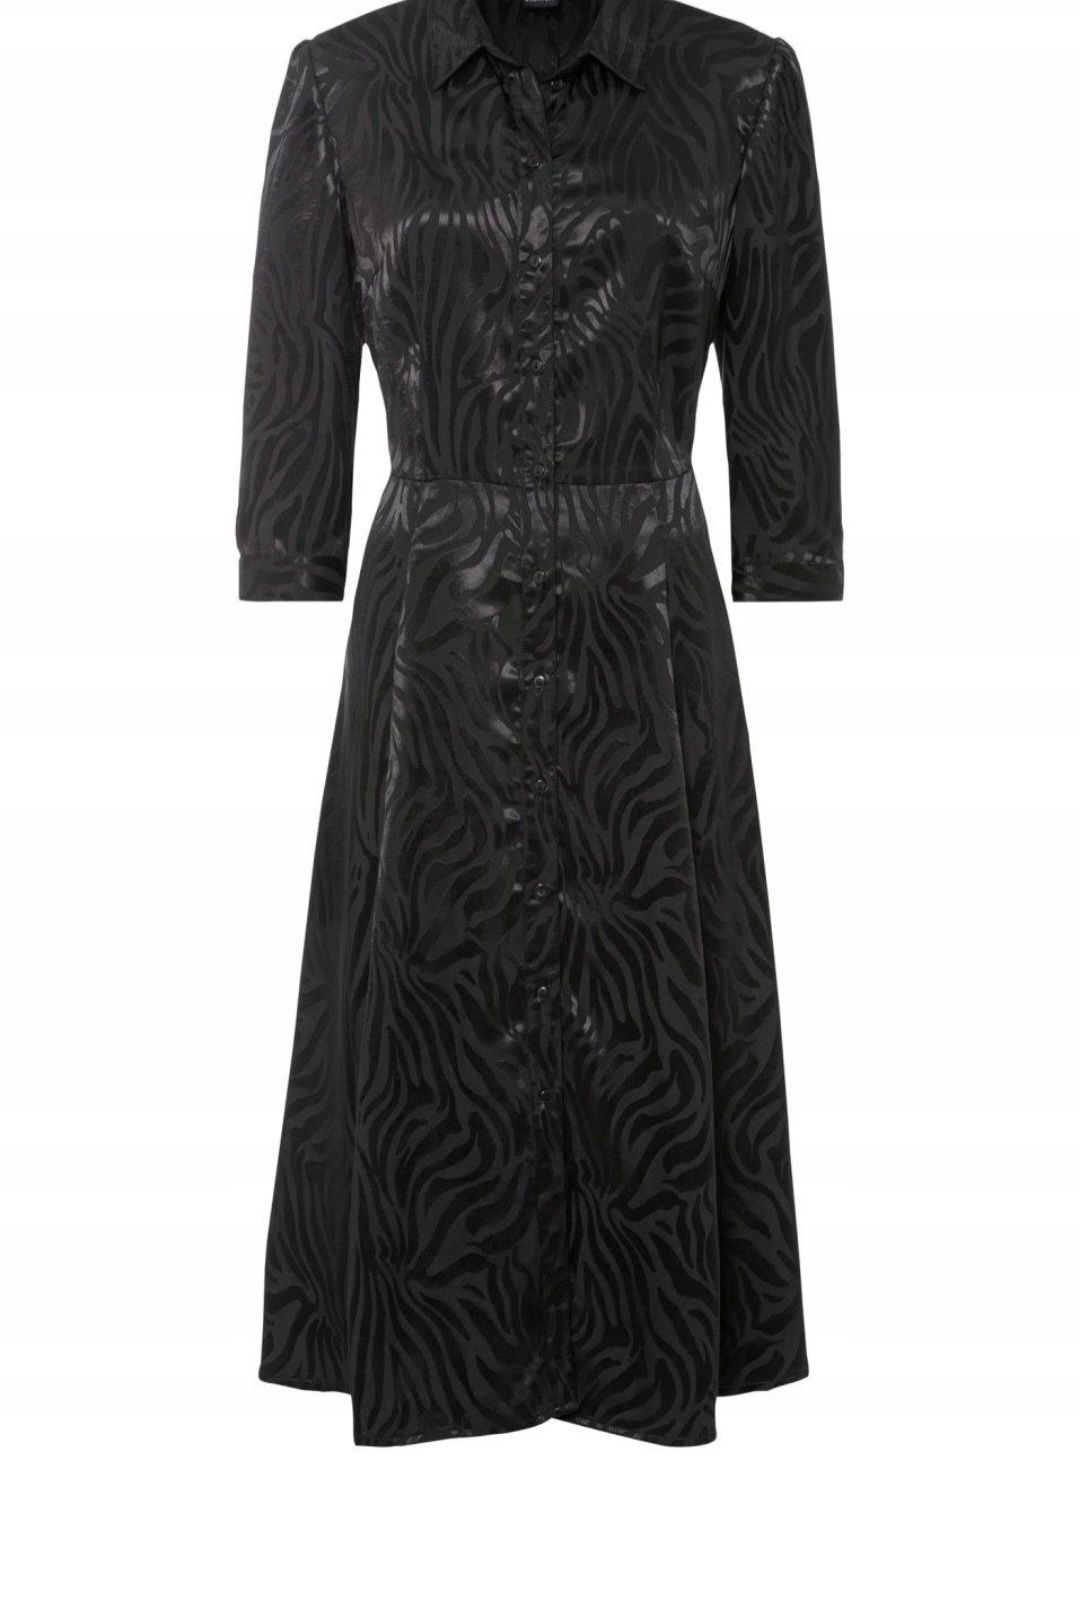 Nowa sukienka atłasowa czarna 46